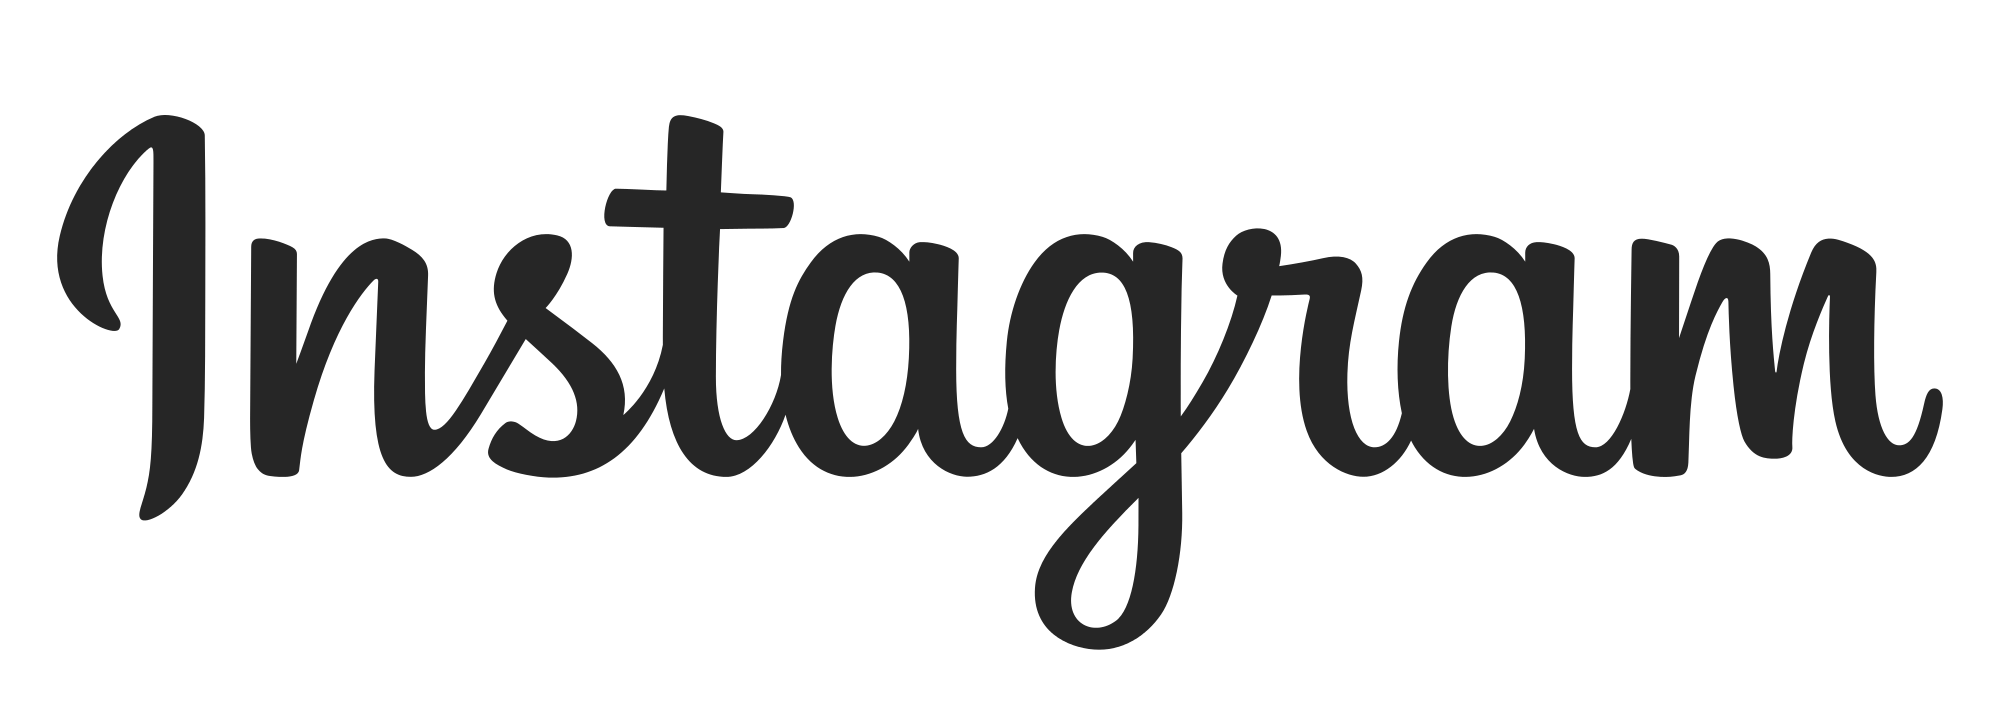 Instagram IG Logo PNG Transparent Image